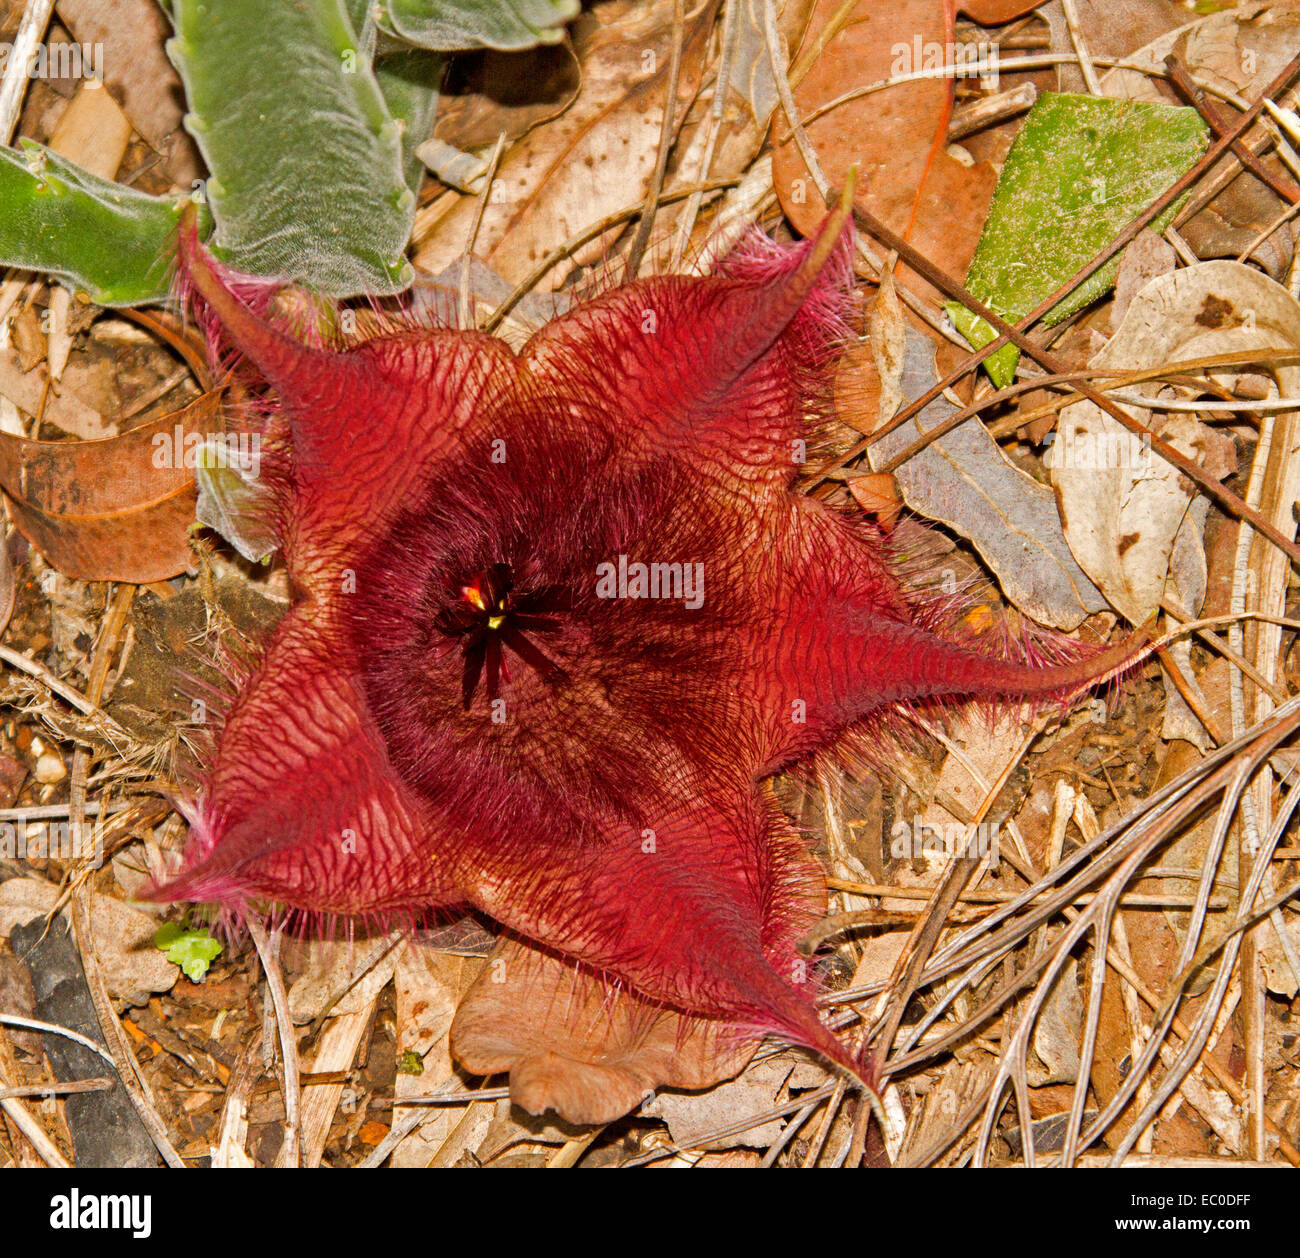 Fluffy inhabituelles fleurs rouge sombre de Stapelia hirsuta, une plante succulente tolérant la sécheresse Banque D'Images